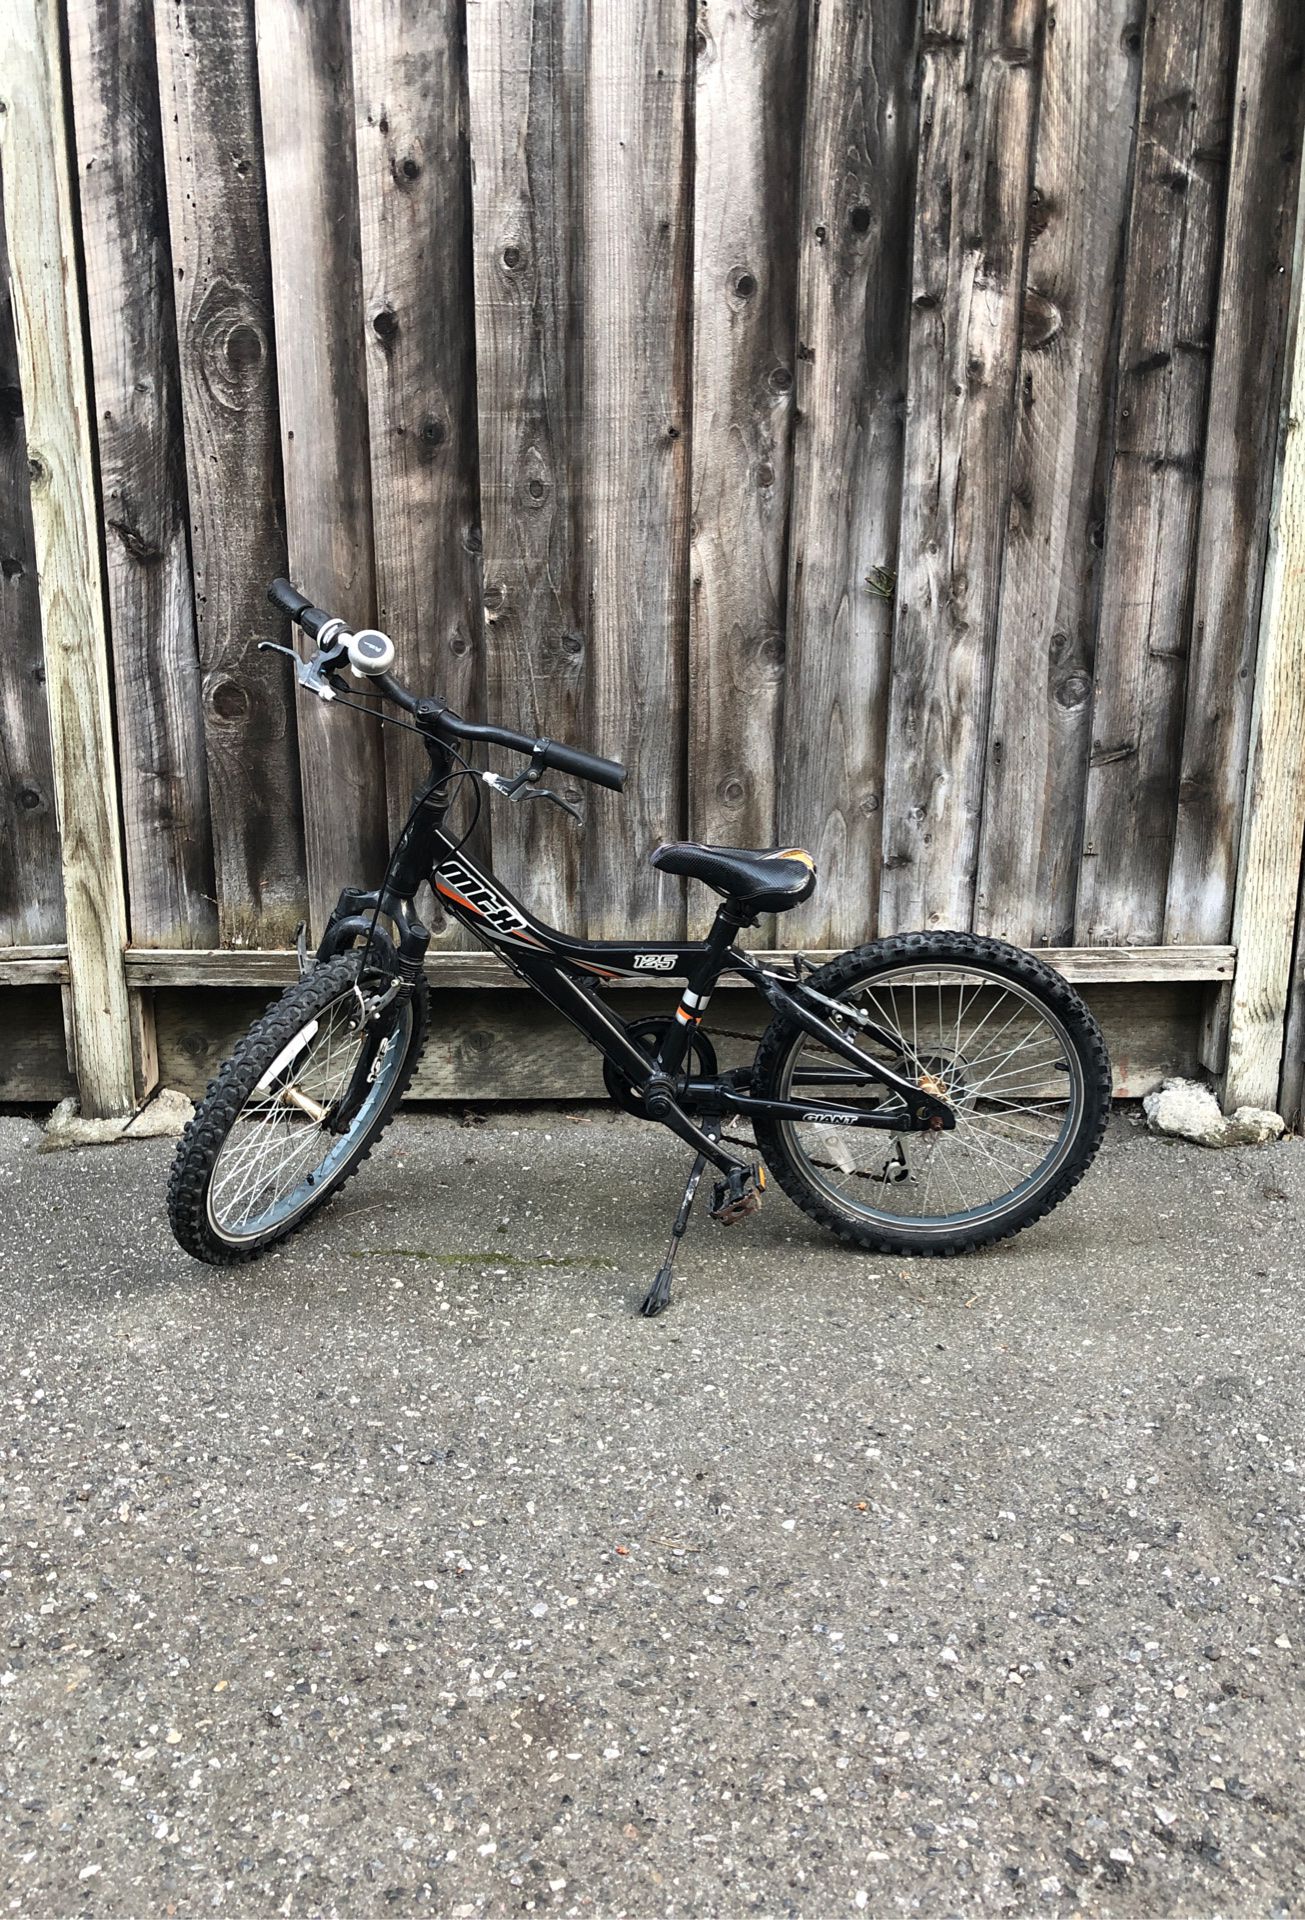 Mtx-125 bike